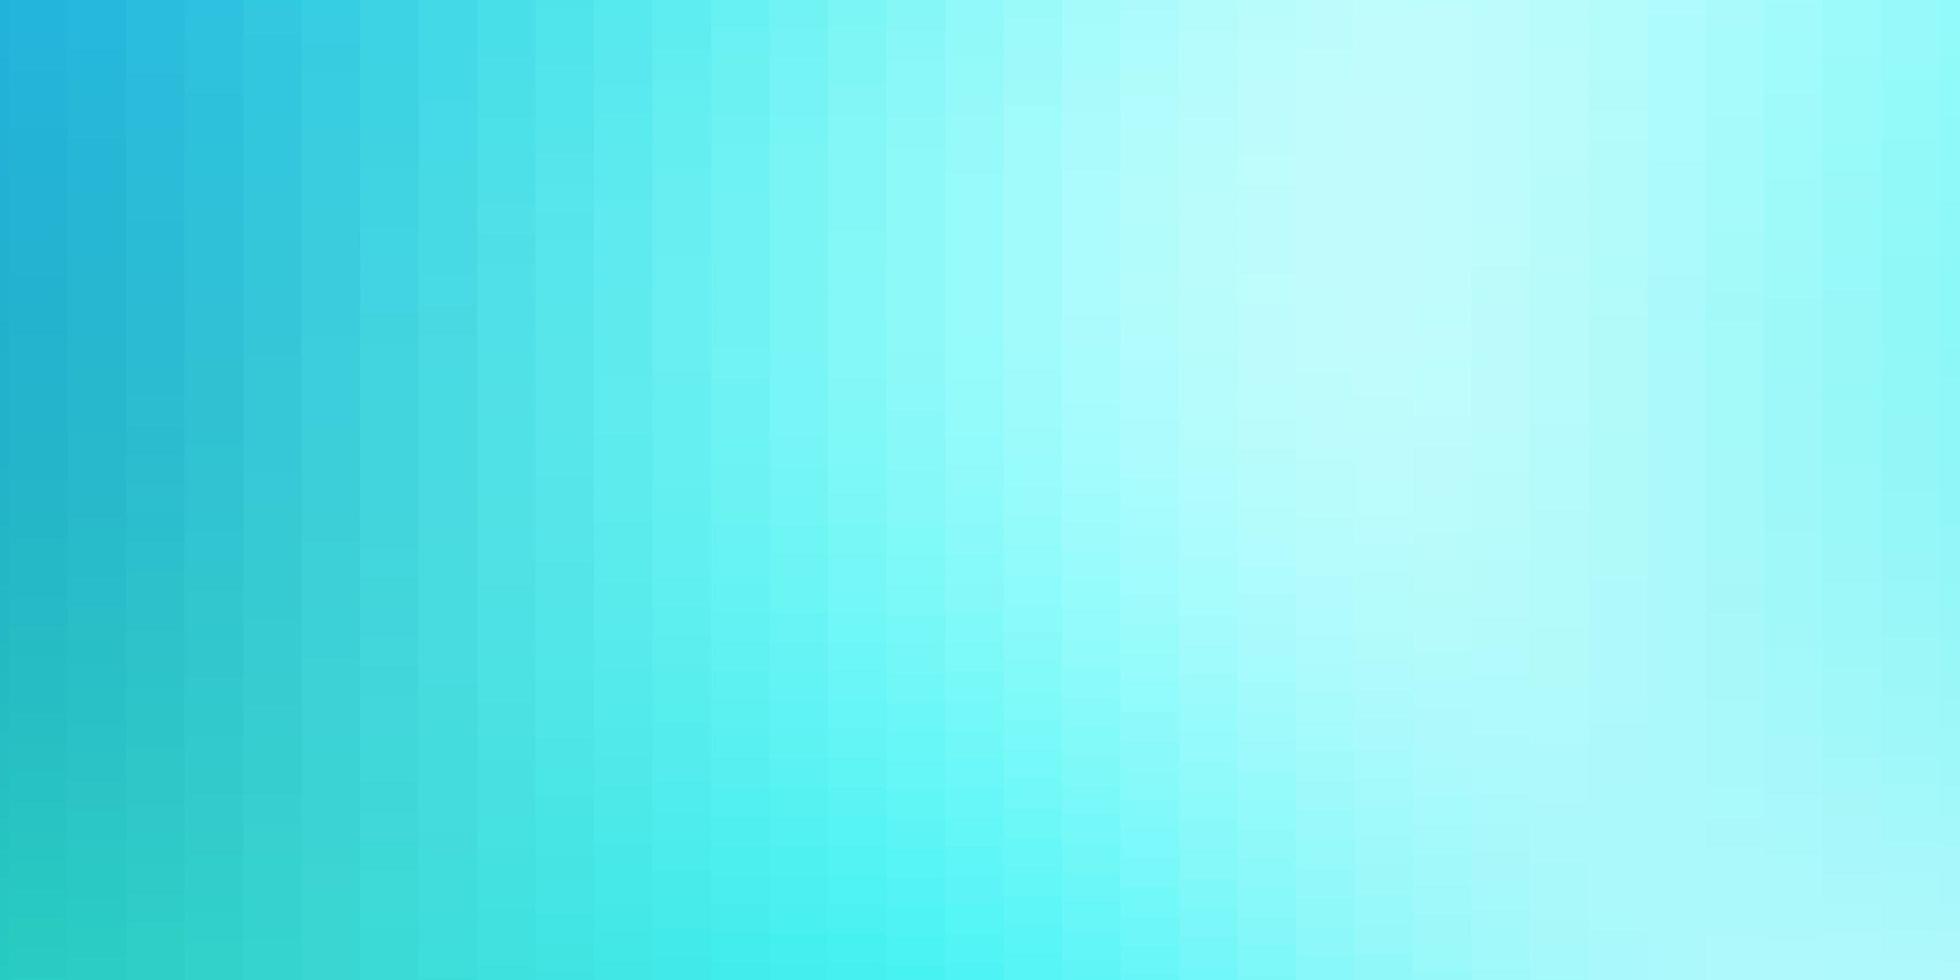 sfondo blu in stile poligonale. vettore